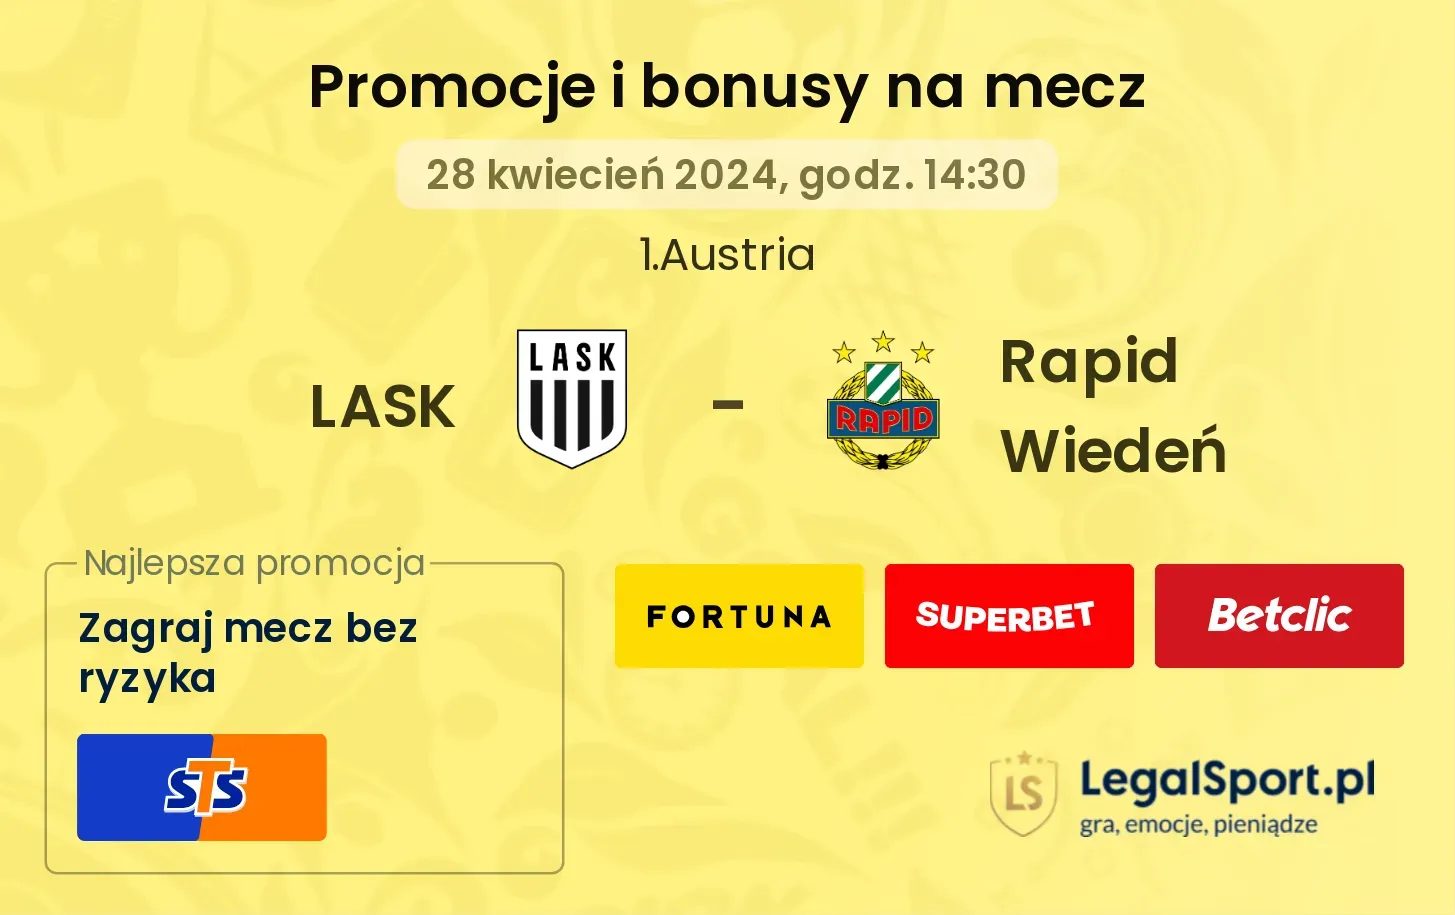 LASK - Rapid Wiedeń promocje bonusy na mecz